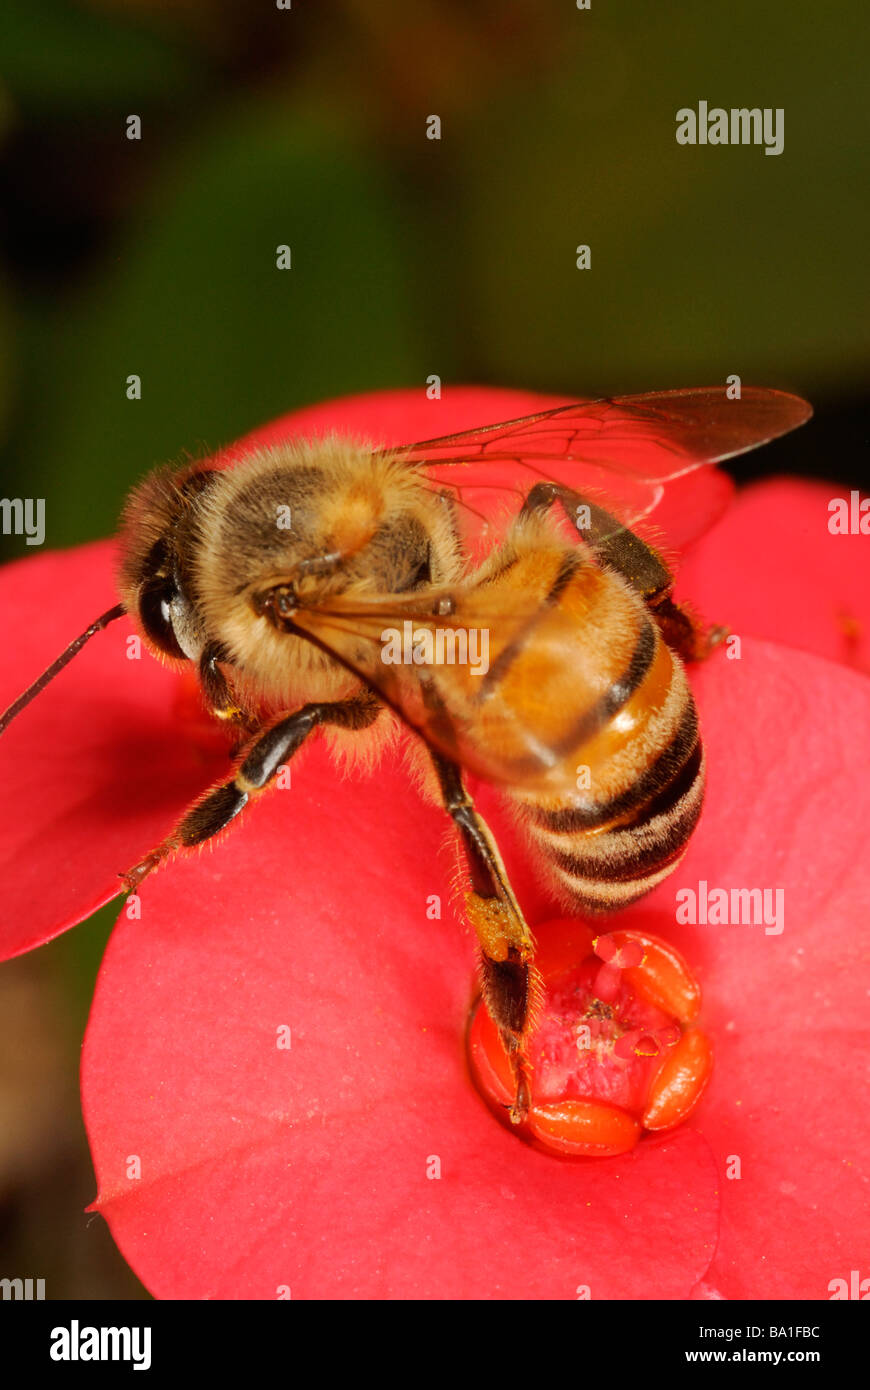 La quête d'abeilles sur les fleurs de la couronne d'épines Banque D'Images